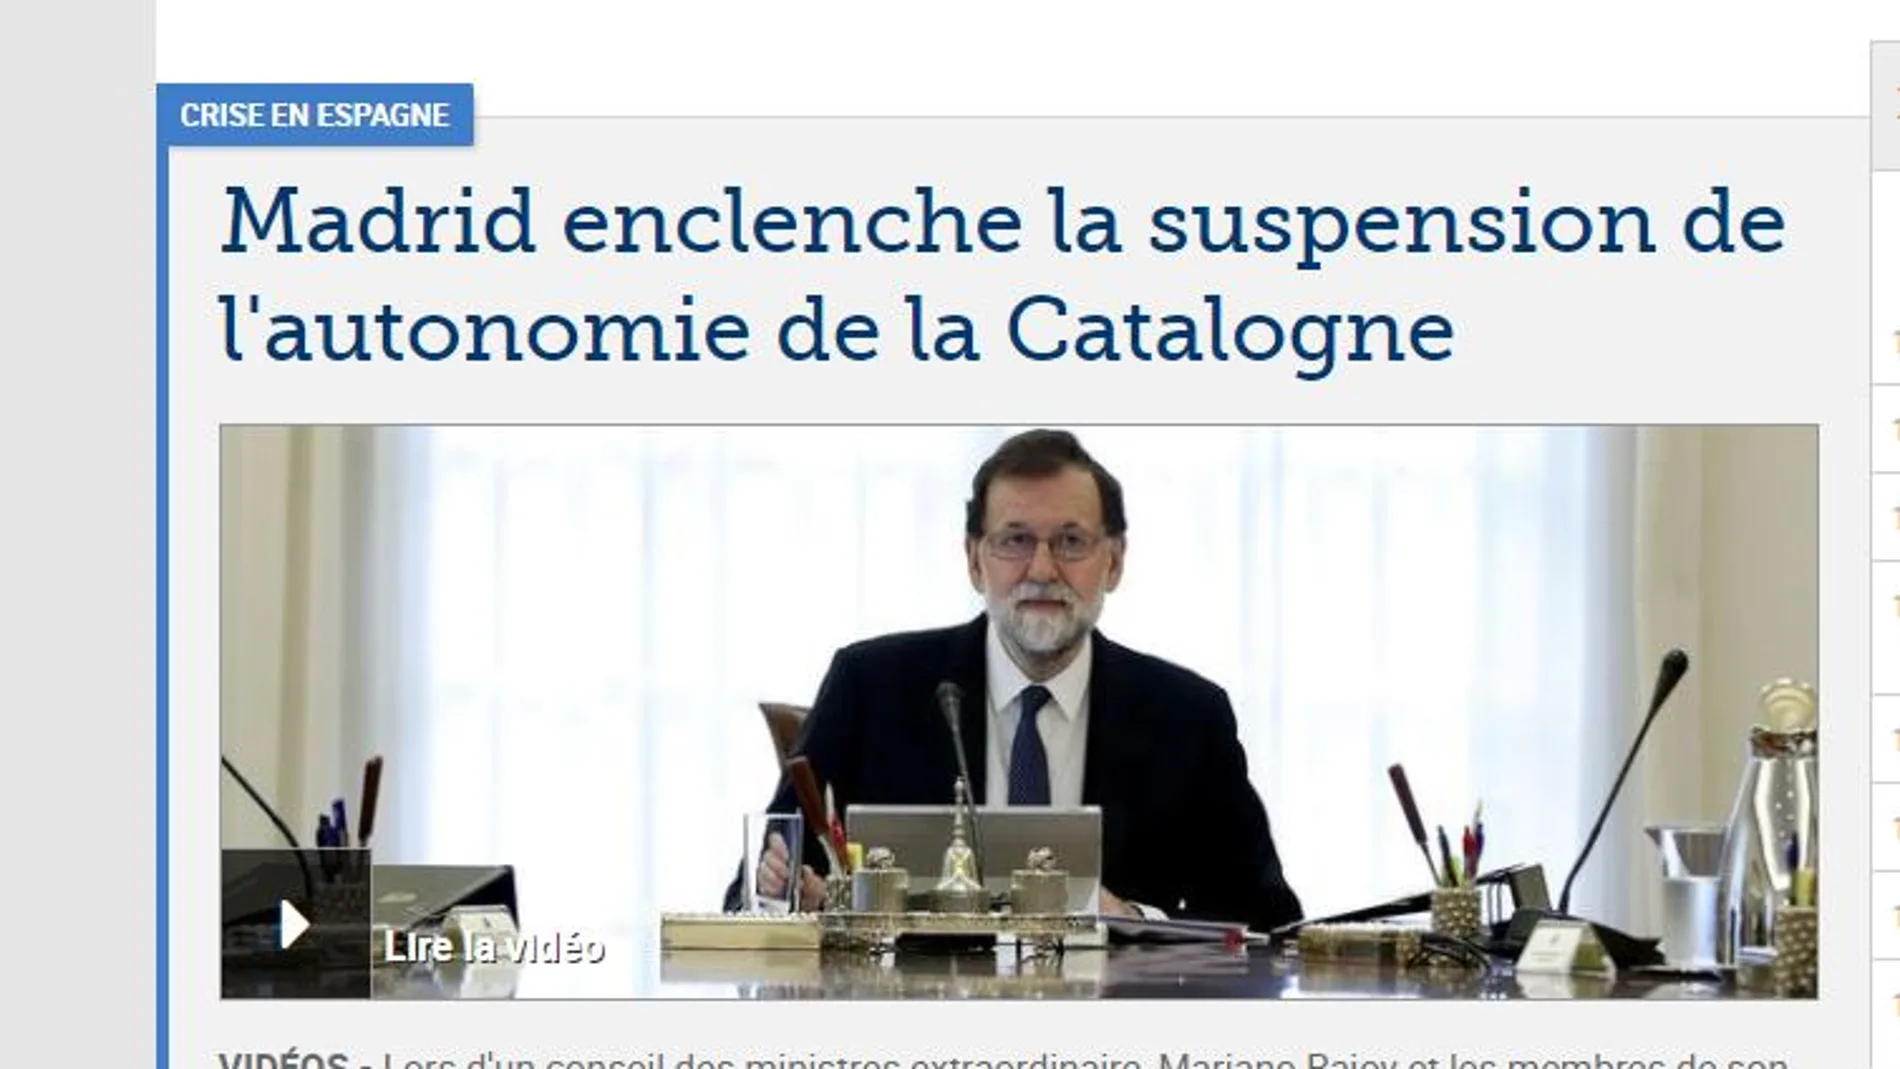 Así ve la prensa internacional las medidas de Rajoy